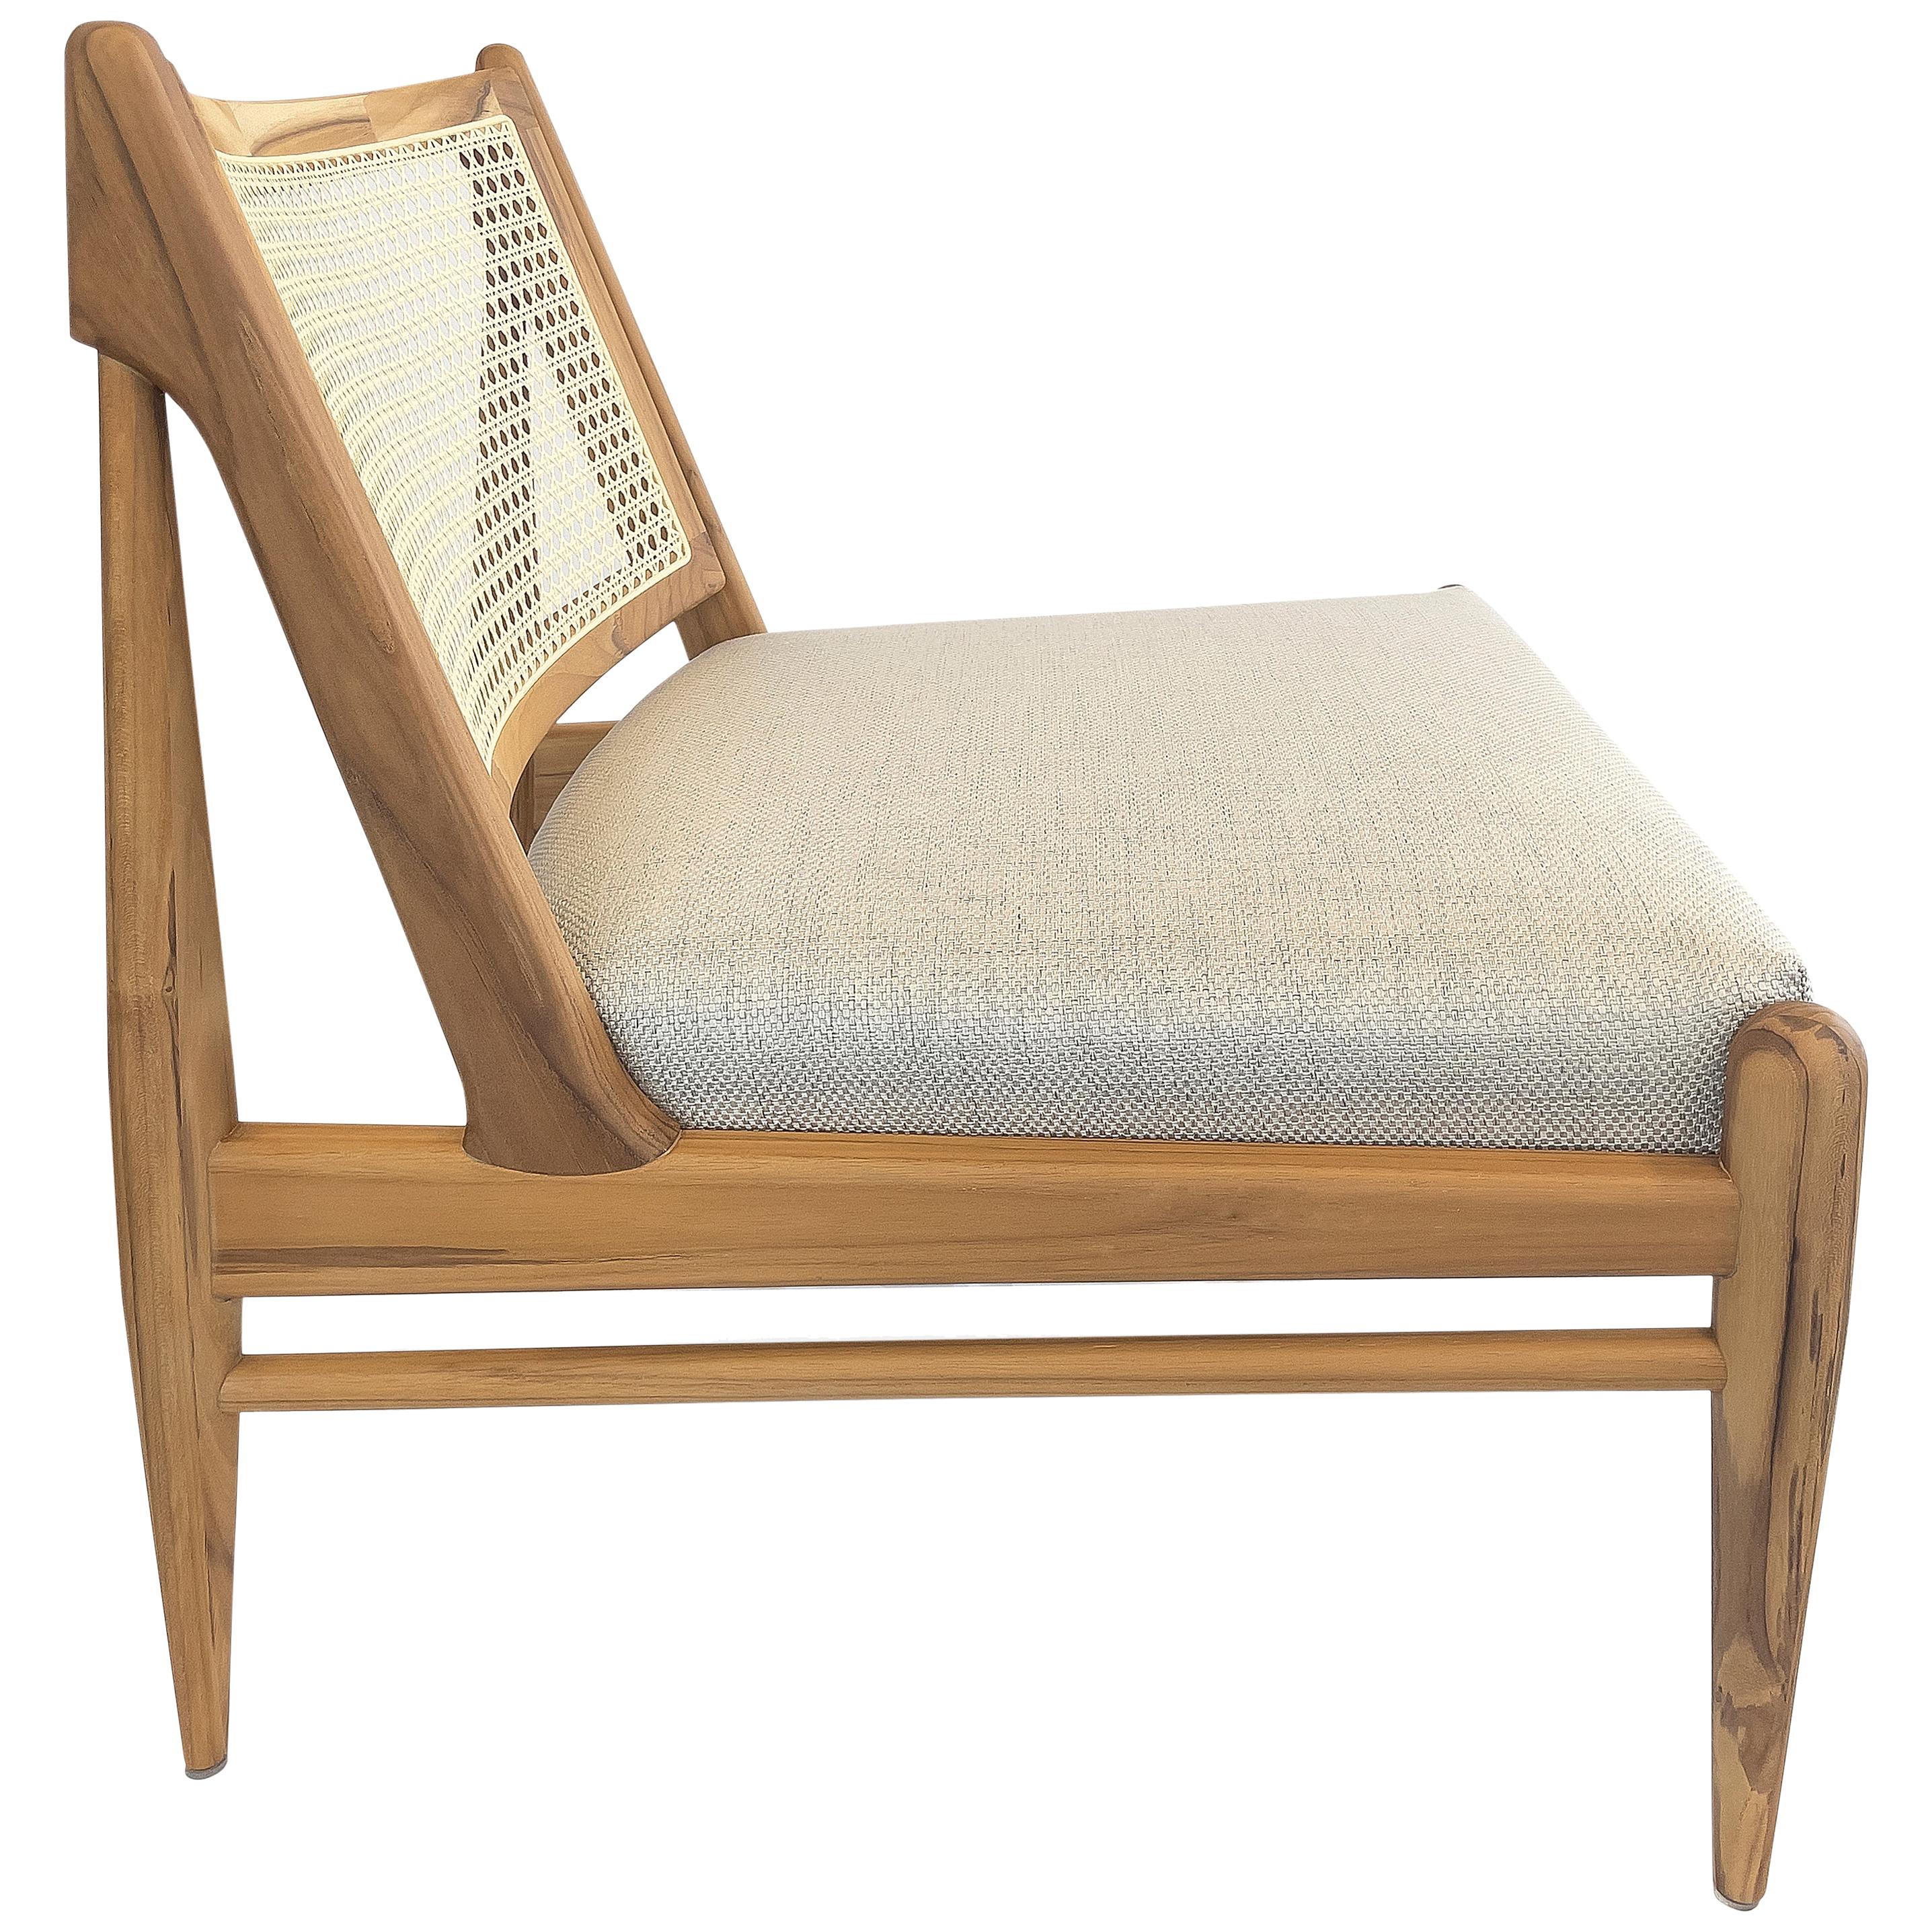 La chaise Donna est une nouvelle façon de se détendre avec sa finition en bois de teck, le tissu beige clair qui recouvre son assise et son magnifique dossier en rotin. Cette chaise a été conçue par notre équipe d'Uultis Design afin d'offrir un